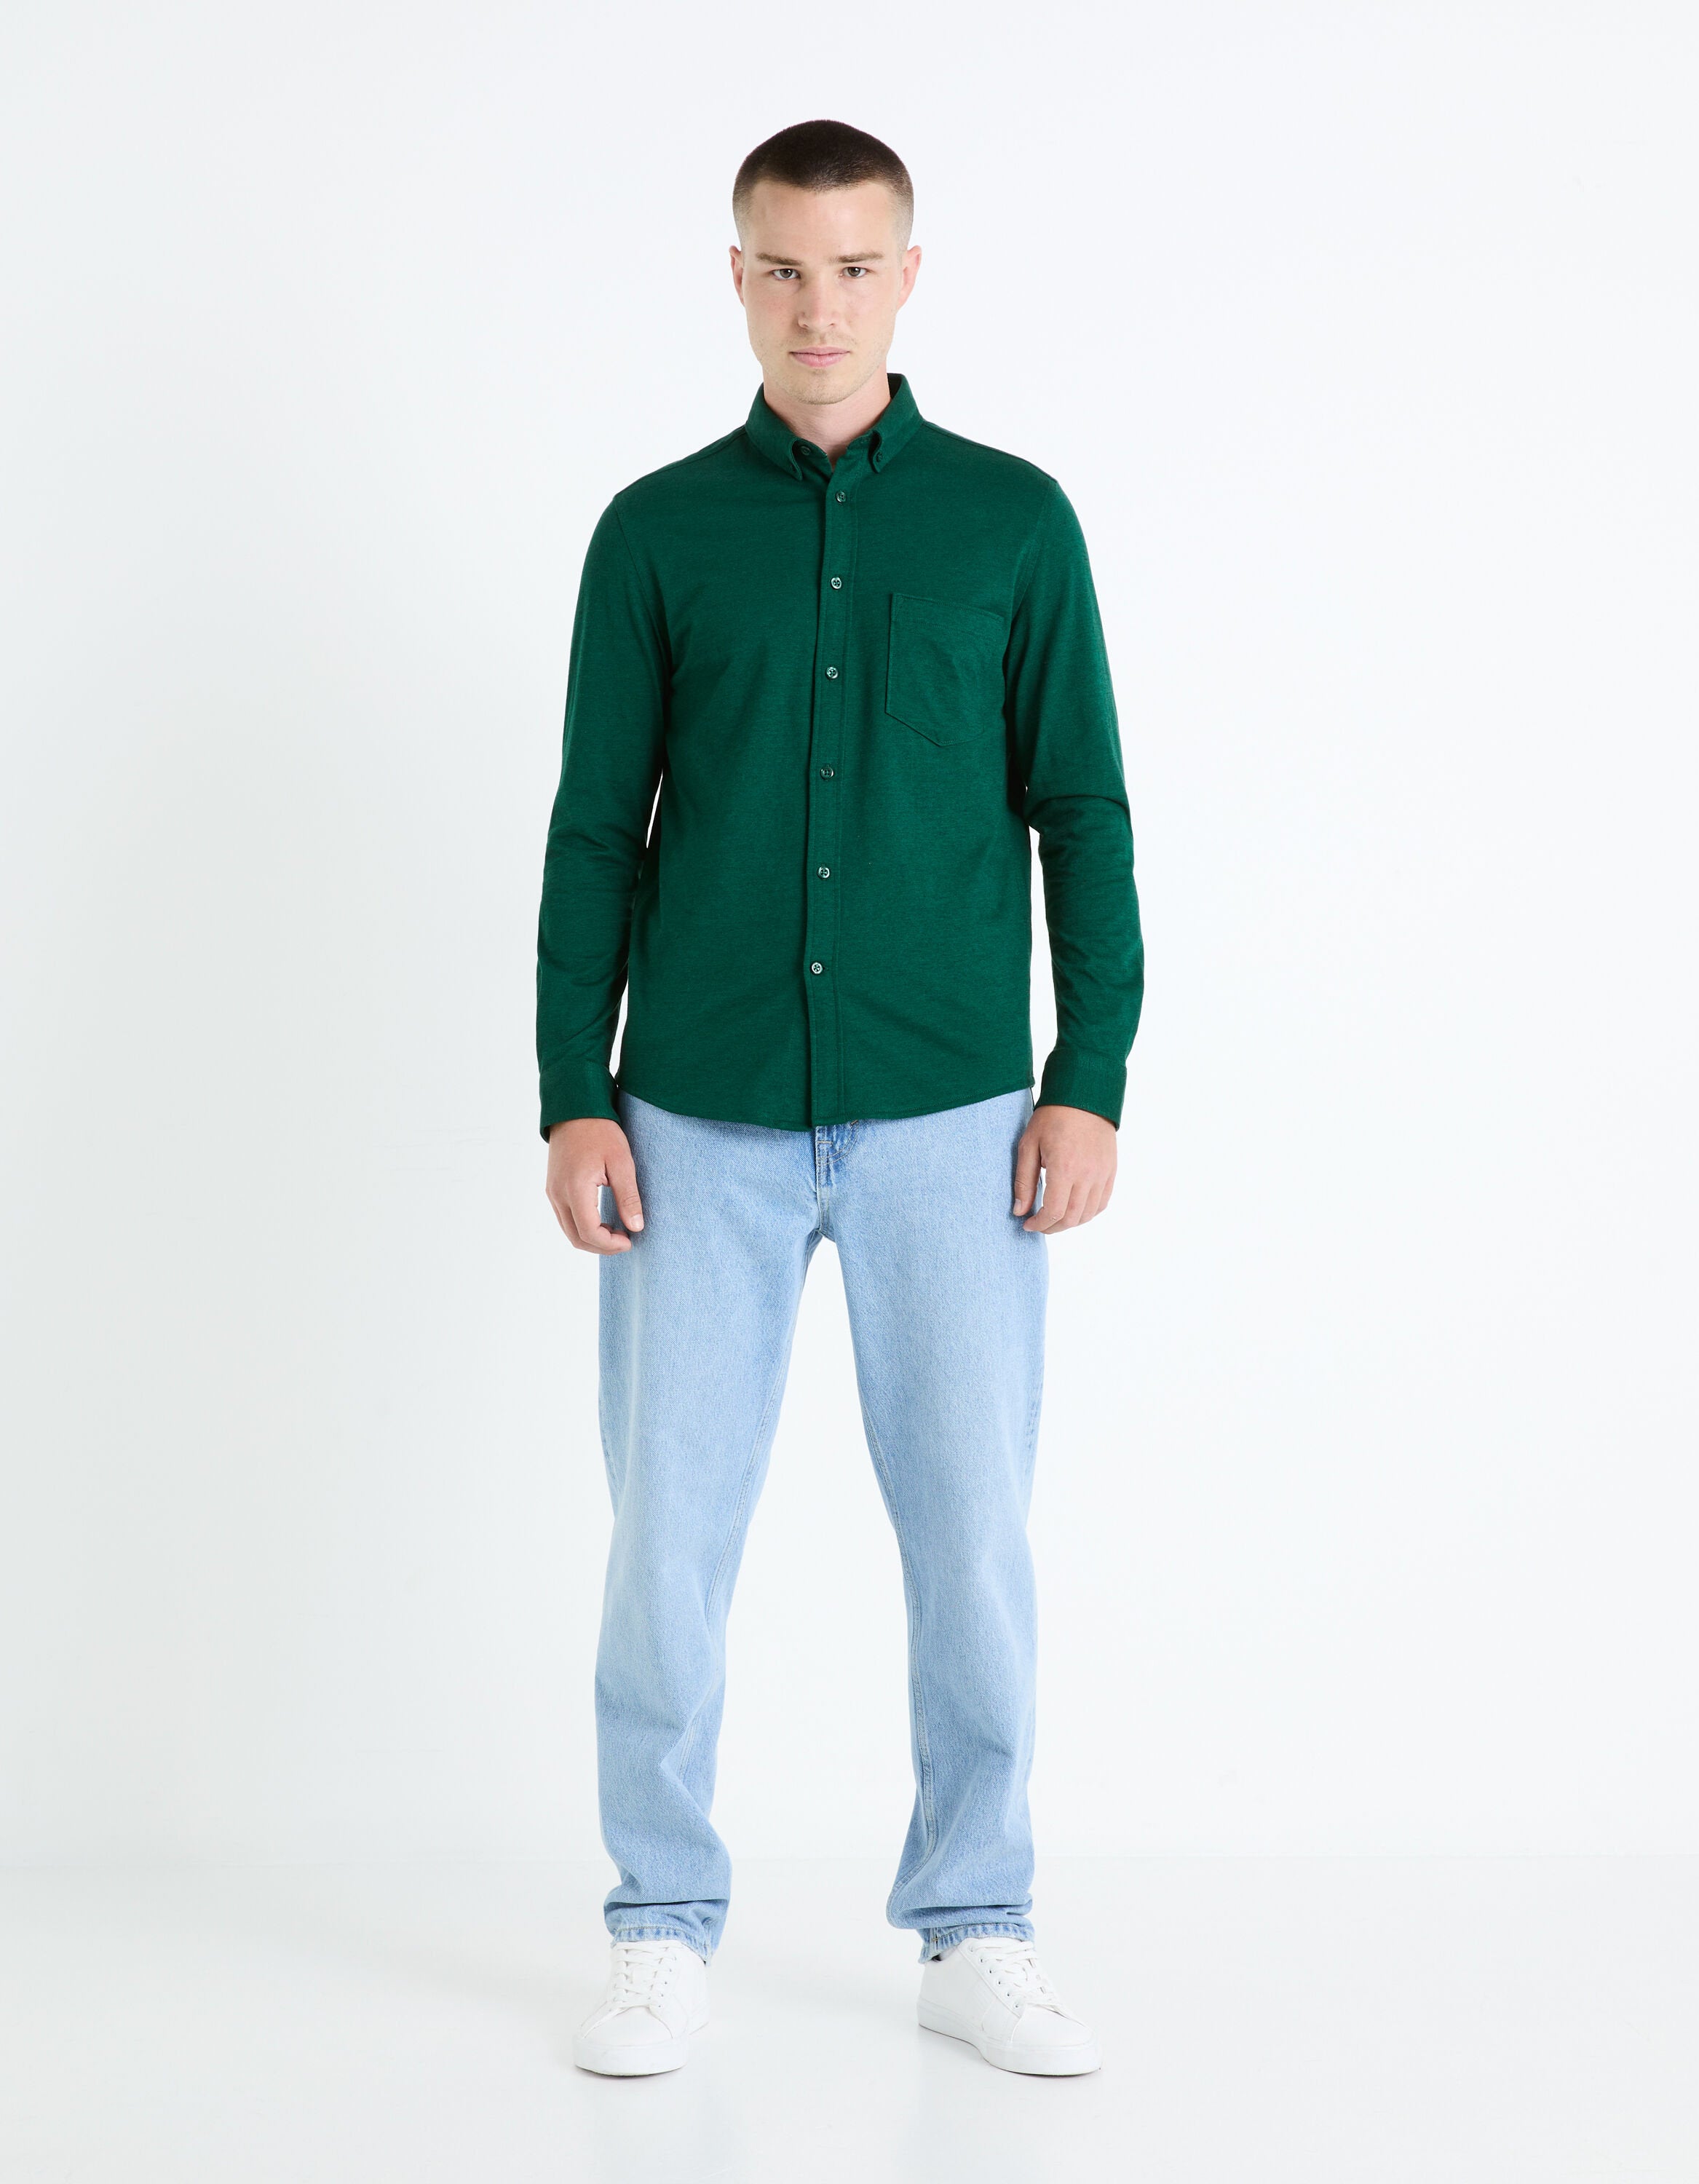 Regular 100% Cotton Pique Knit Shirt - Green_BAPIK_DARK GREEN_02